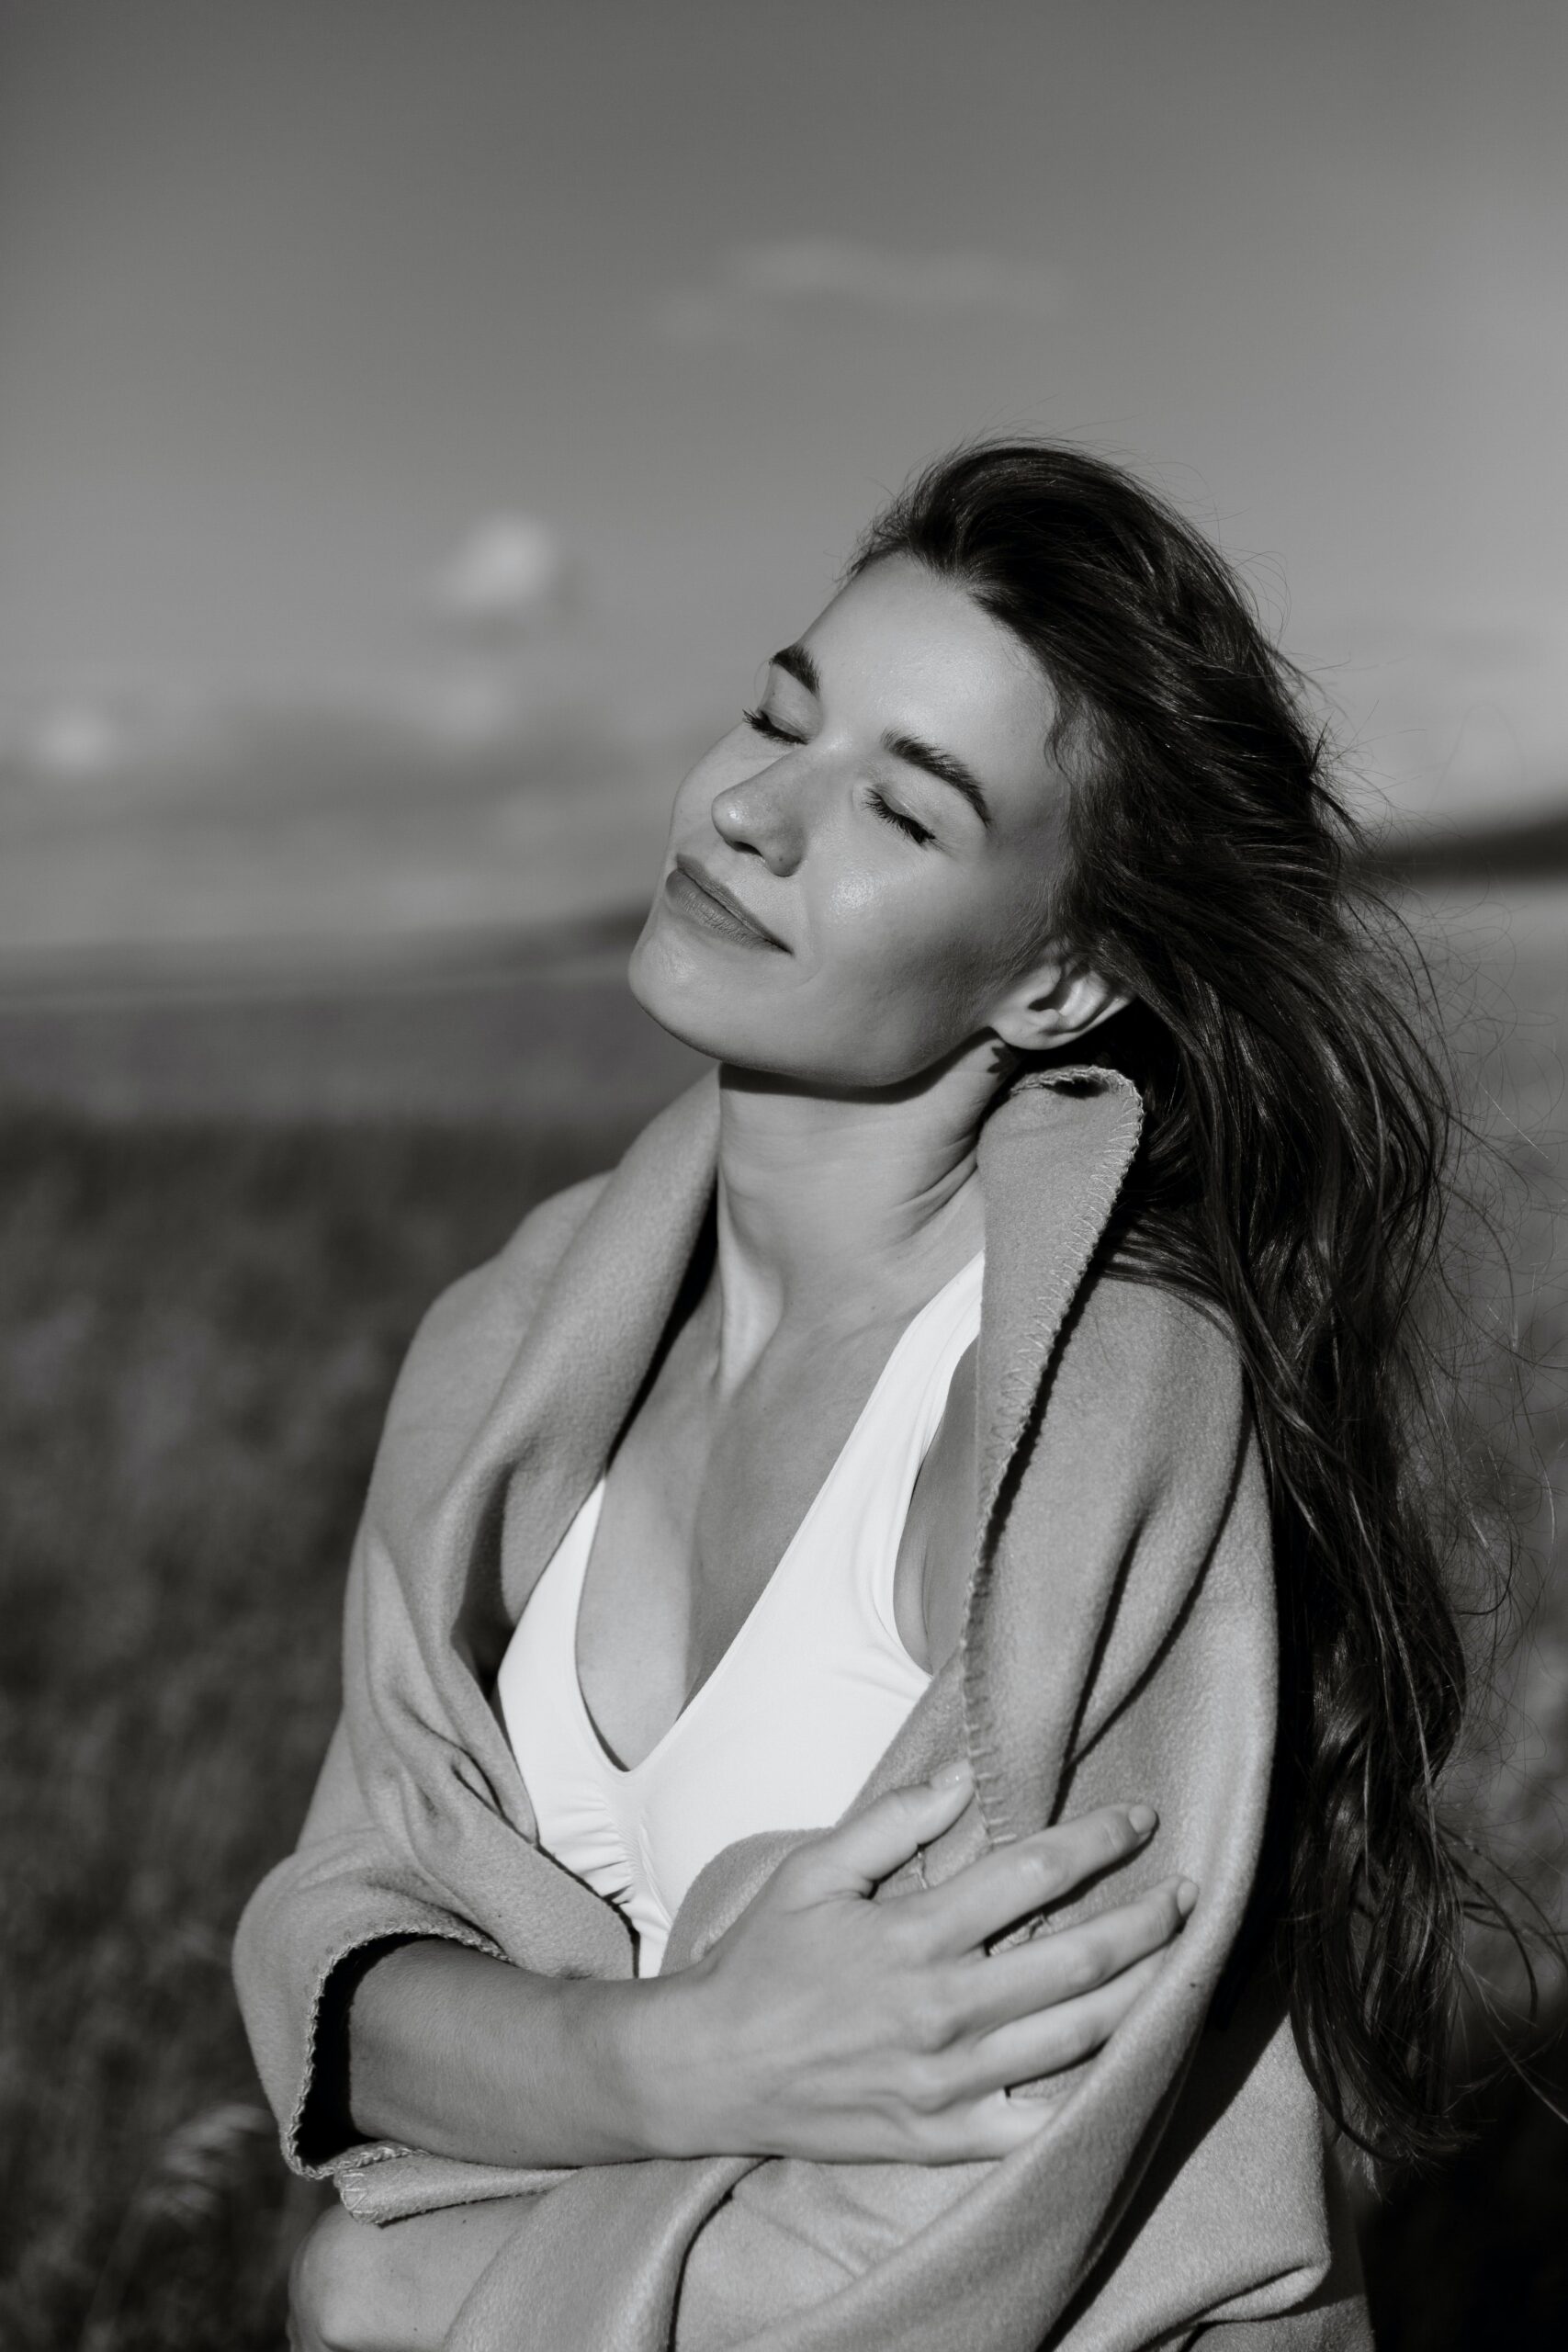 Schwarz-Weiß-Bild einer Frau, die zufrieden die Augen geschlossen hält.